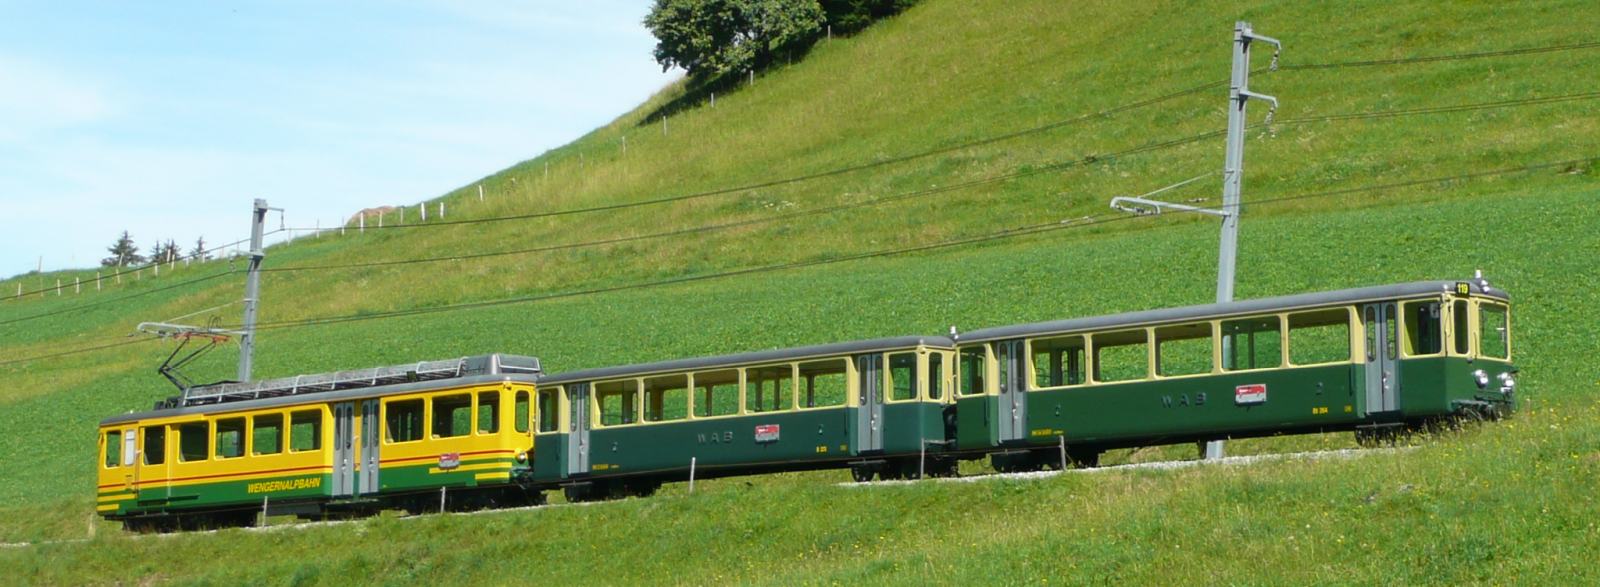 BDhe 4/4 with two trailers in August 2009 on the Lauterbrunnen-Kleine Scheidegg line